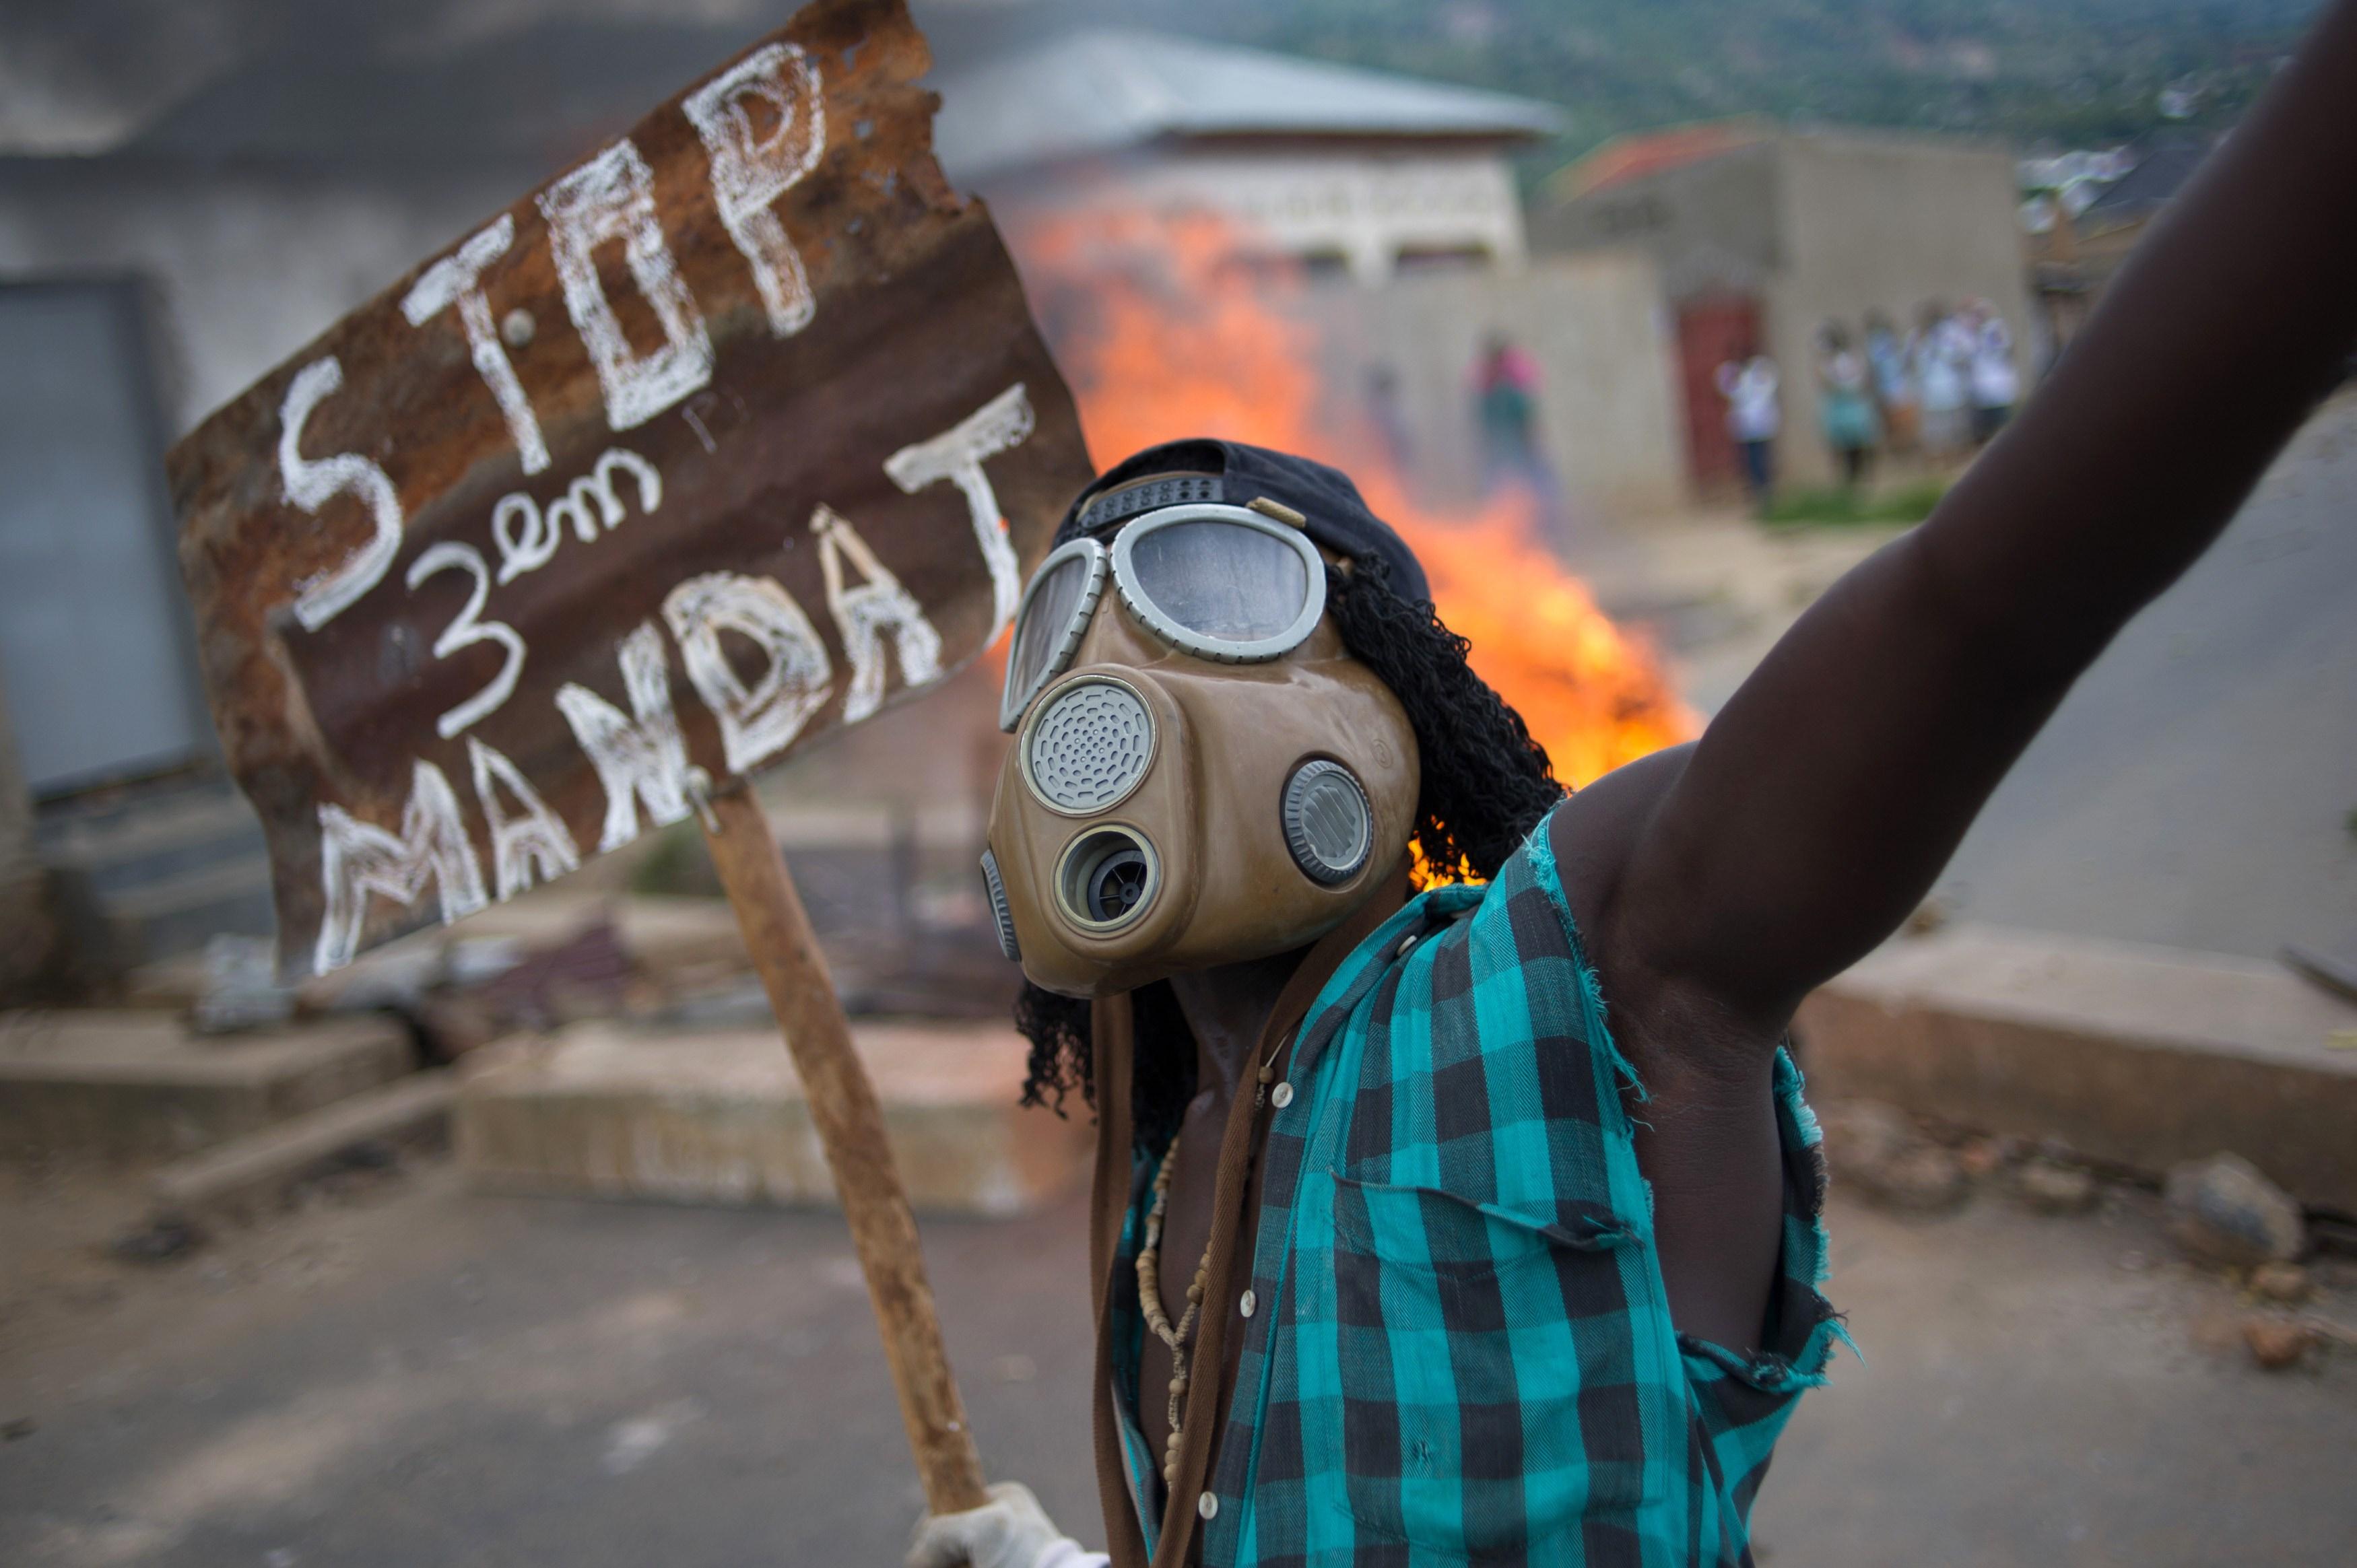 När Burundis sittande president beslöt ställa upp för en ny mandatperiod utbröt oroligheter i landet. Sedan dess har våldet eskalerat och omvärlden befarar ett nytt folkmord. (Foto: Phil Moore /AFP/Getty Image)